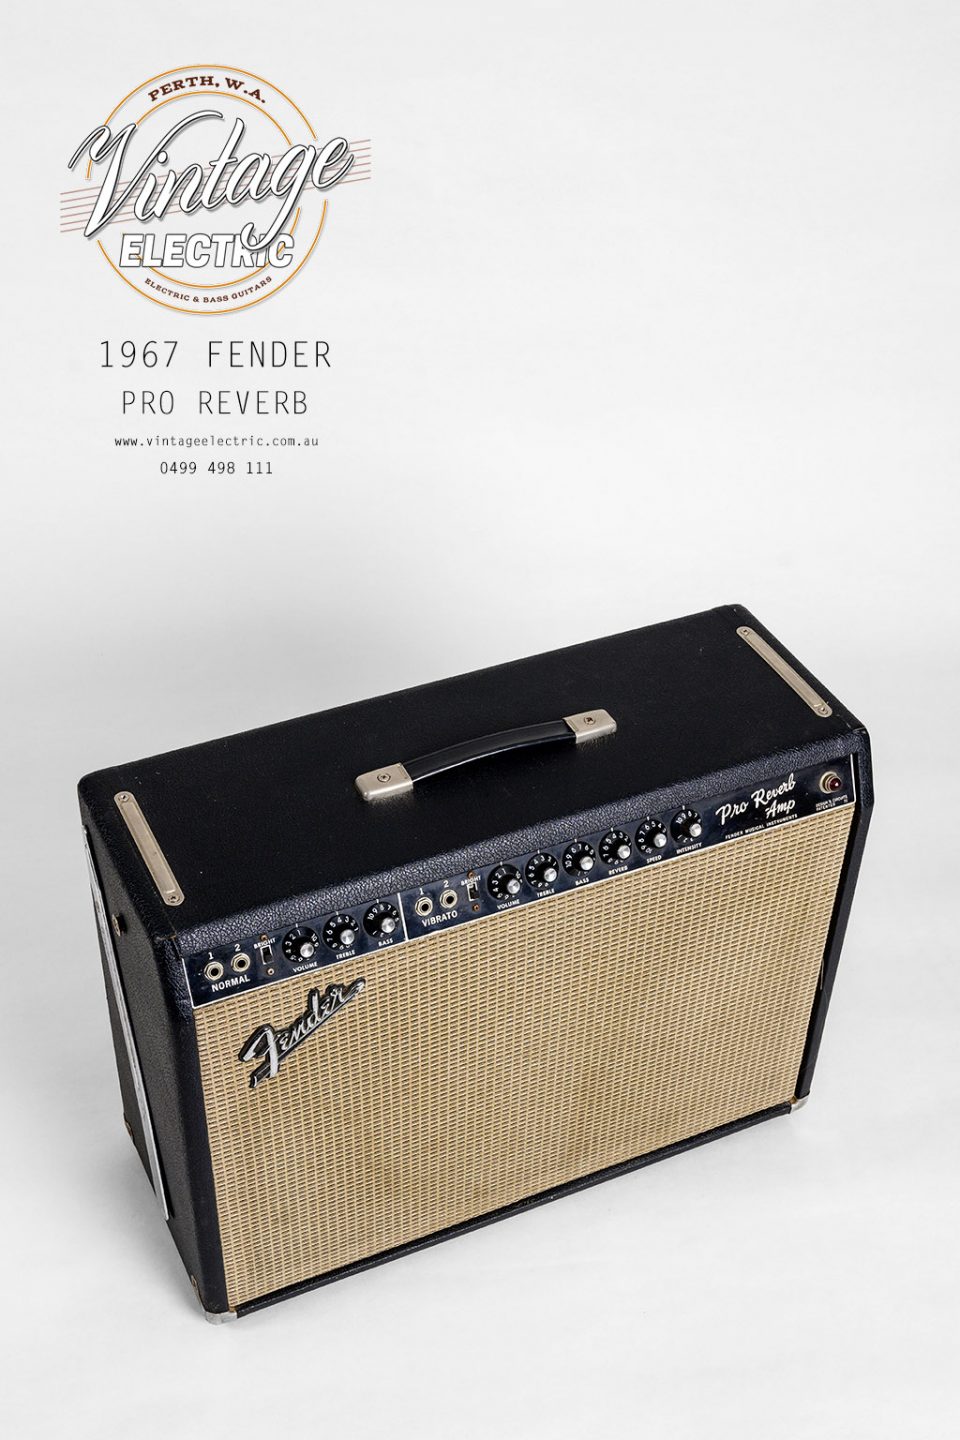 1967 Fender Pro Reverb Blackface Top